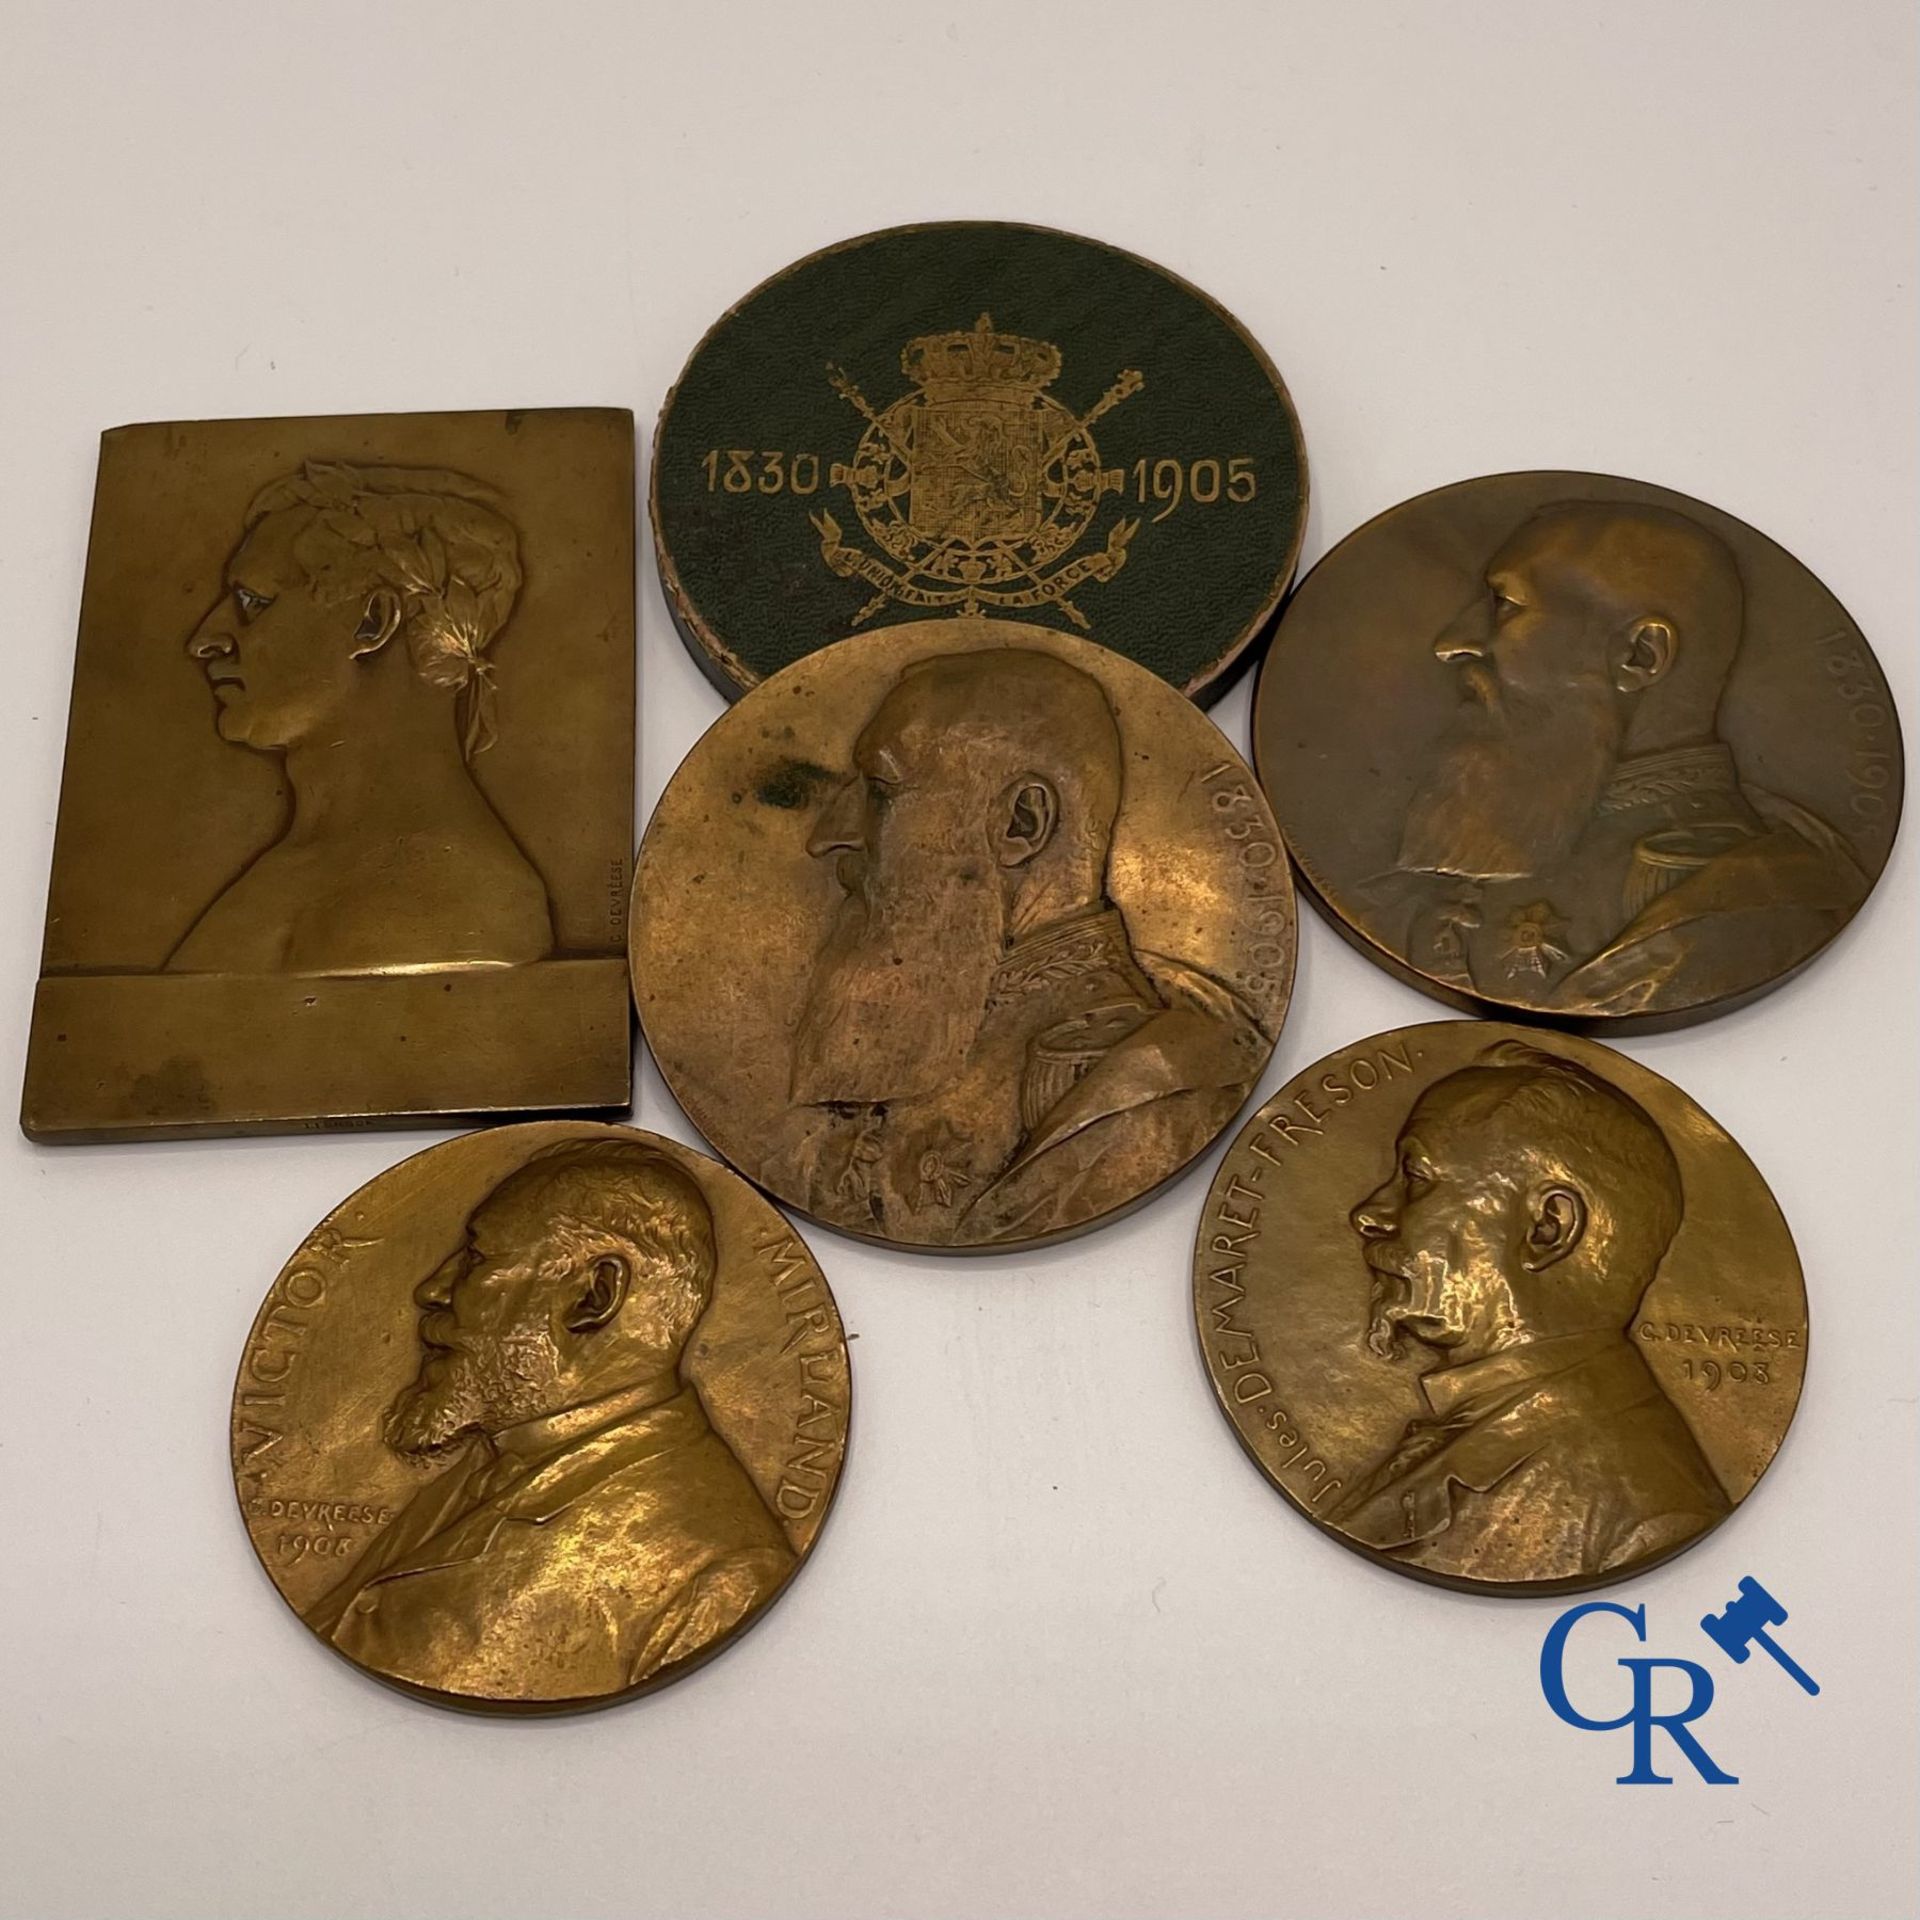 Medals: Godefroid Devreese: 5 medals in bronze. - Bild 2 aus 2